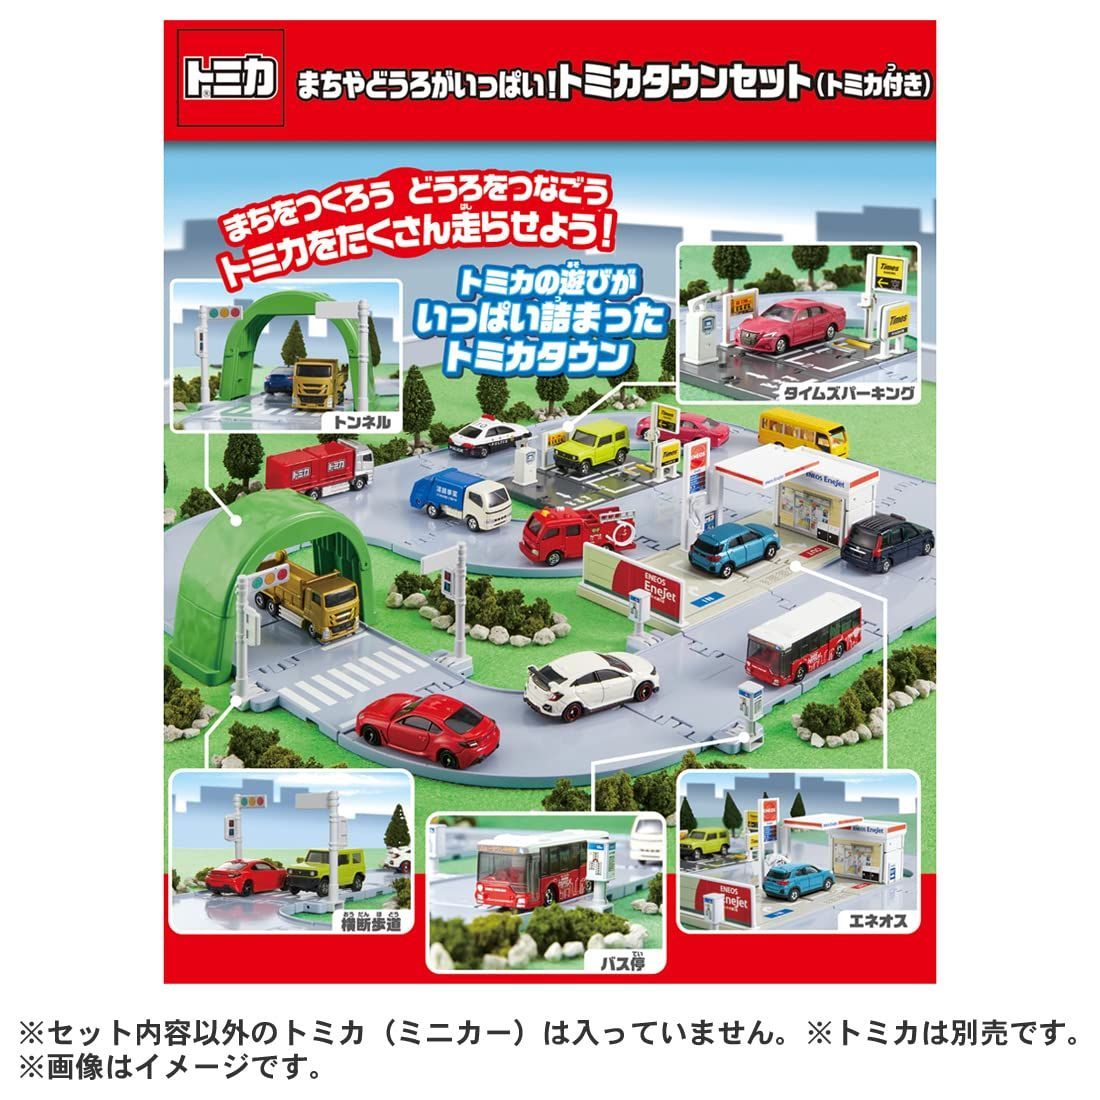 タカラトミー『 トミカ パーキングケース24 』 ミニカー 車 おもちゃ 収納 3歳以上 玩具安全基準合格 STマーク認証 TOMICA TAKARA  通販